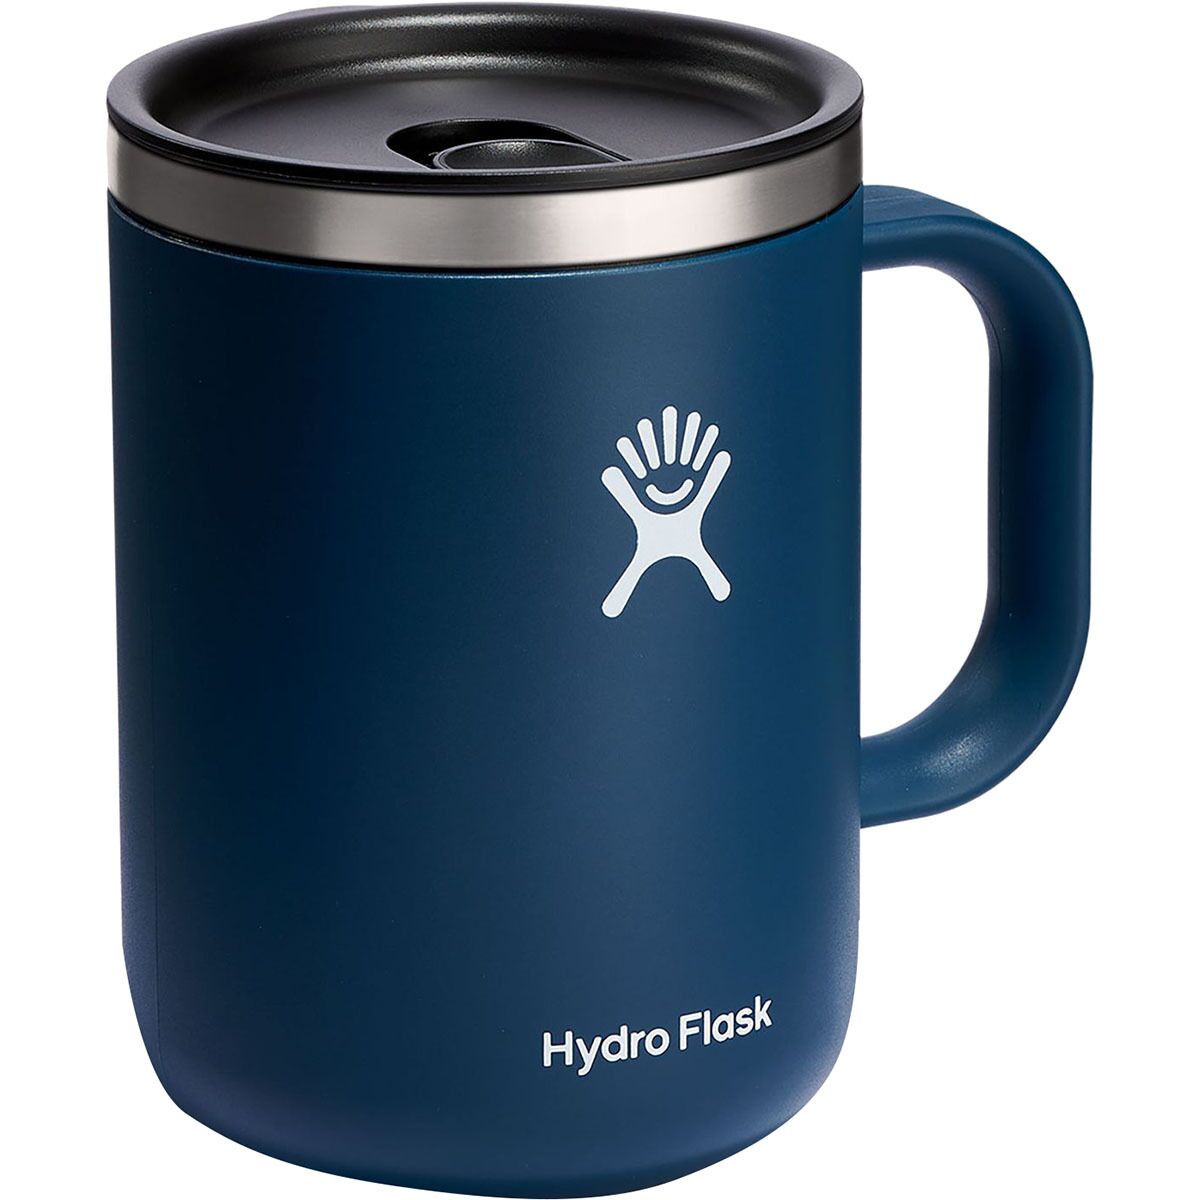 Hydro Flask 24 oz Mug Birch